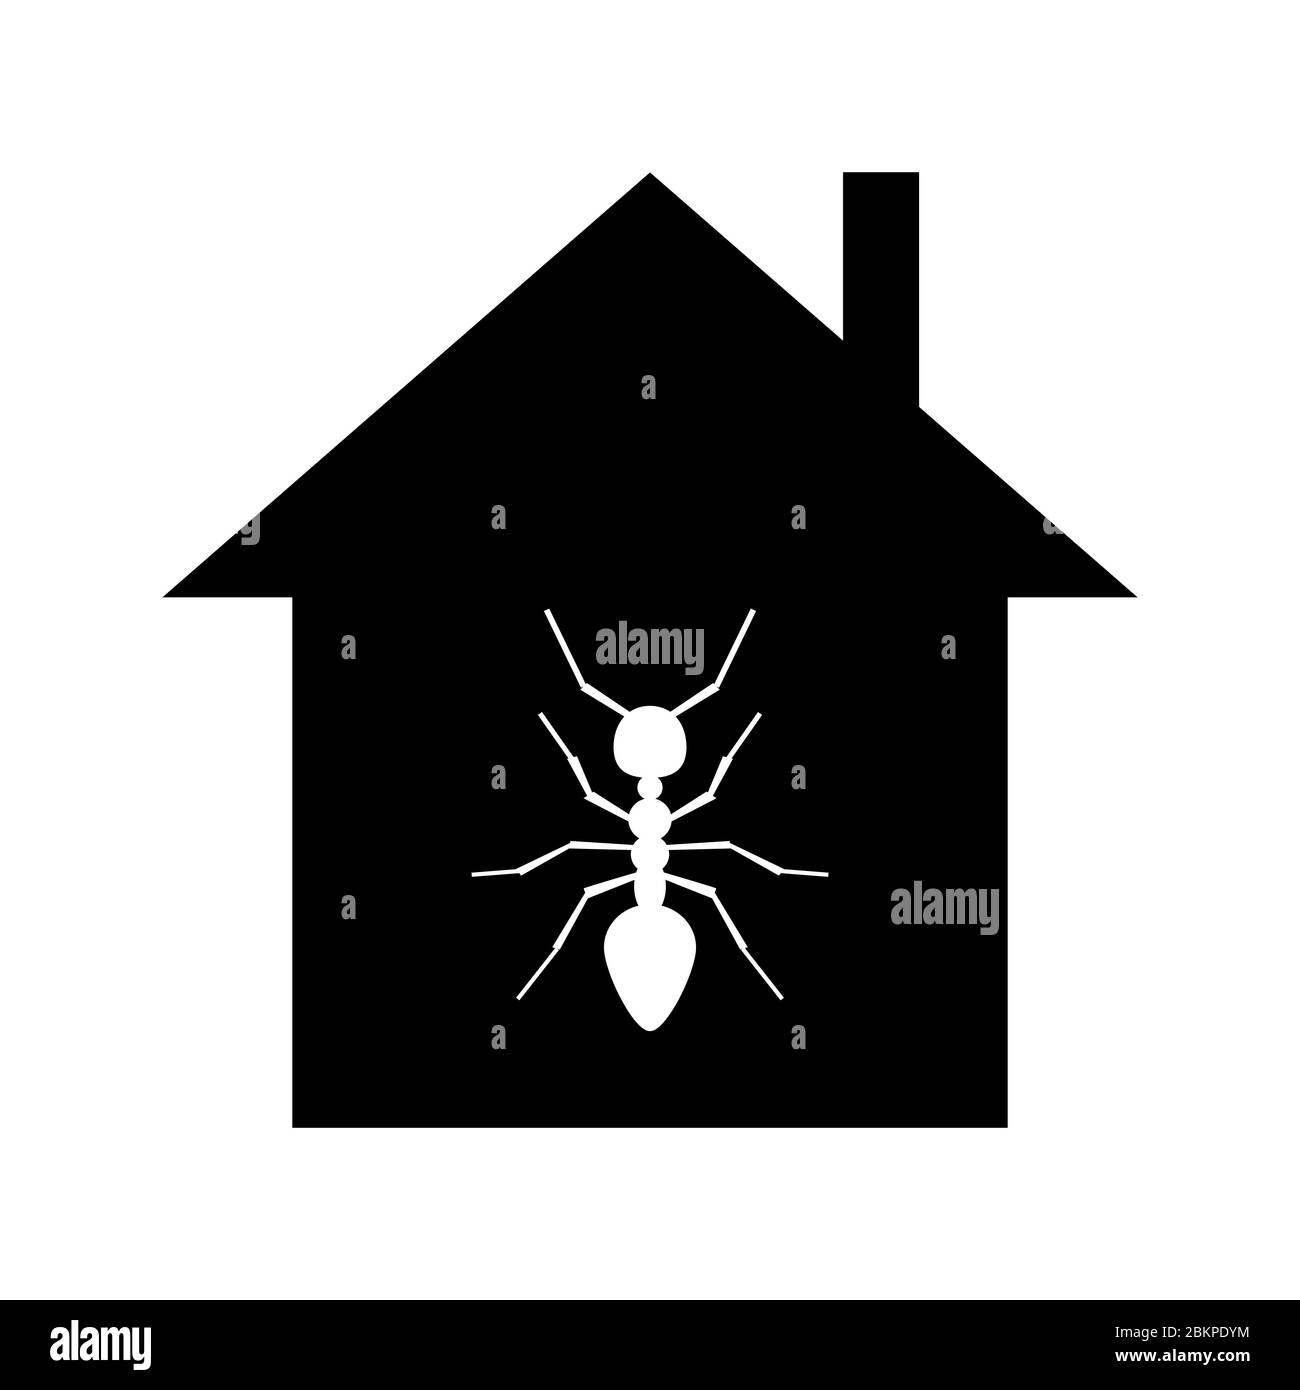 Haus von Ameisen oder Termiten angegriffen, minimalistische flache Vektor-Illustration Symbol, Symbol für Insektenschäden Stock Vektor